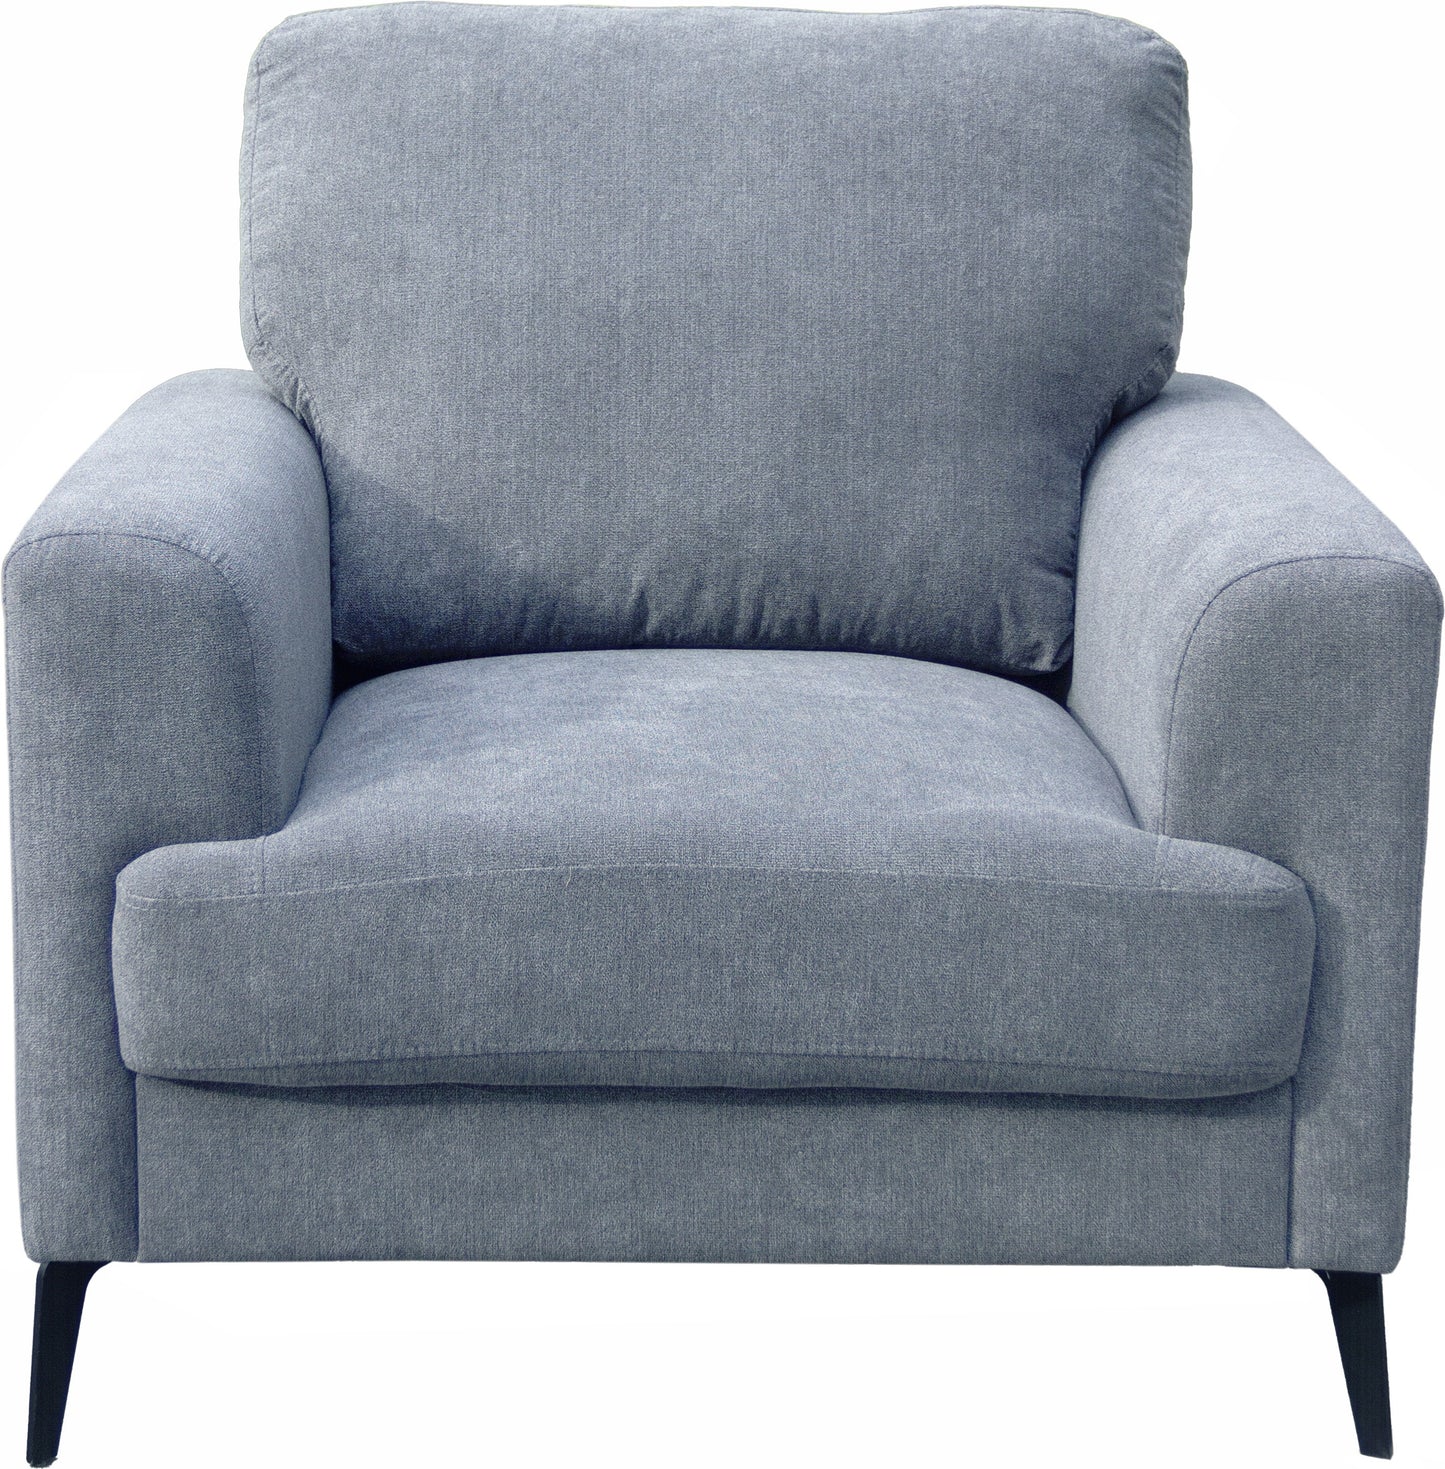 Chenille Sofa Loveseat Chair Living Room Set